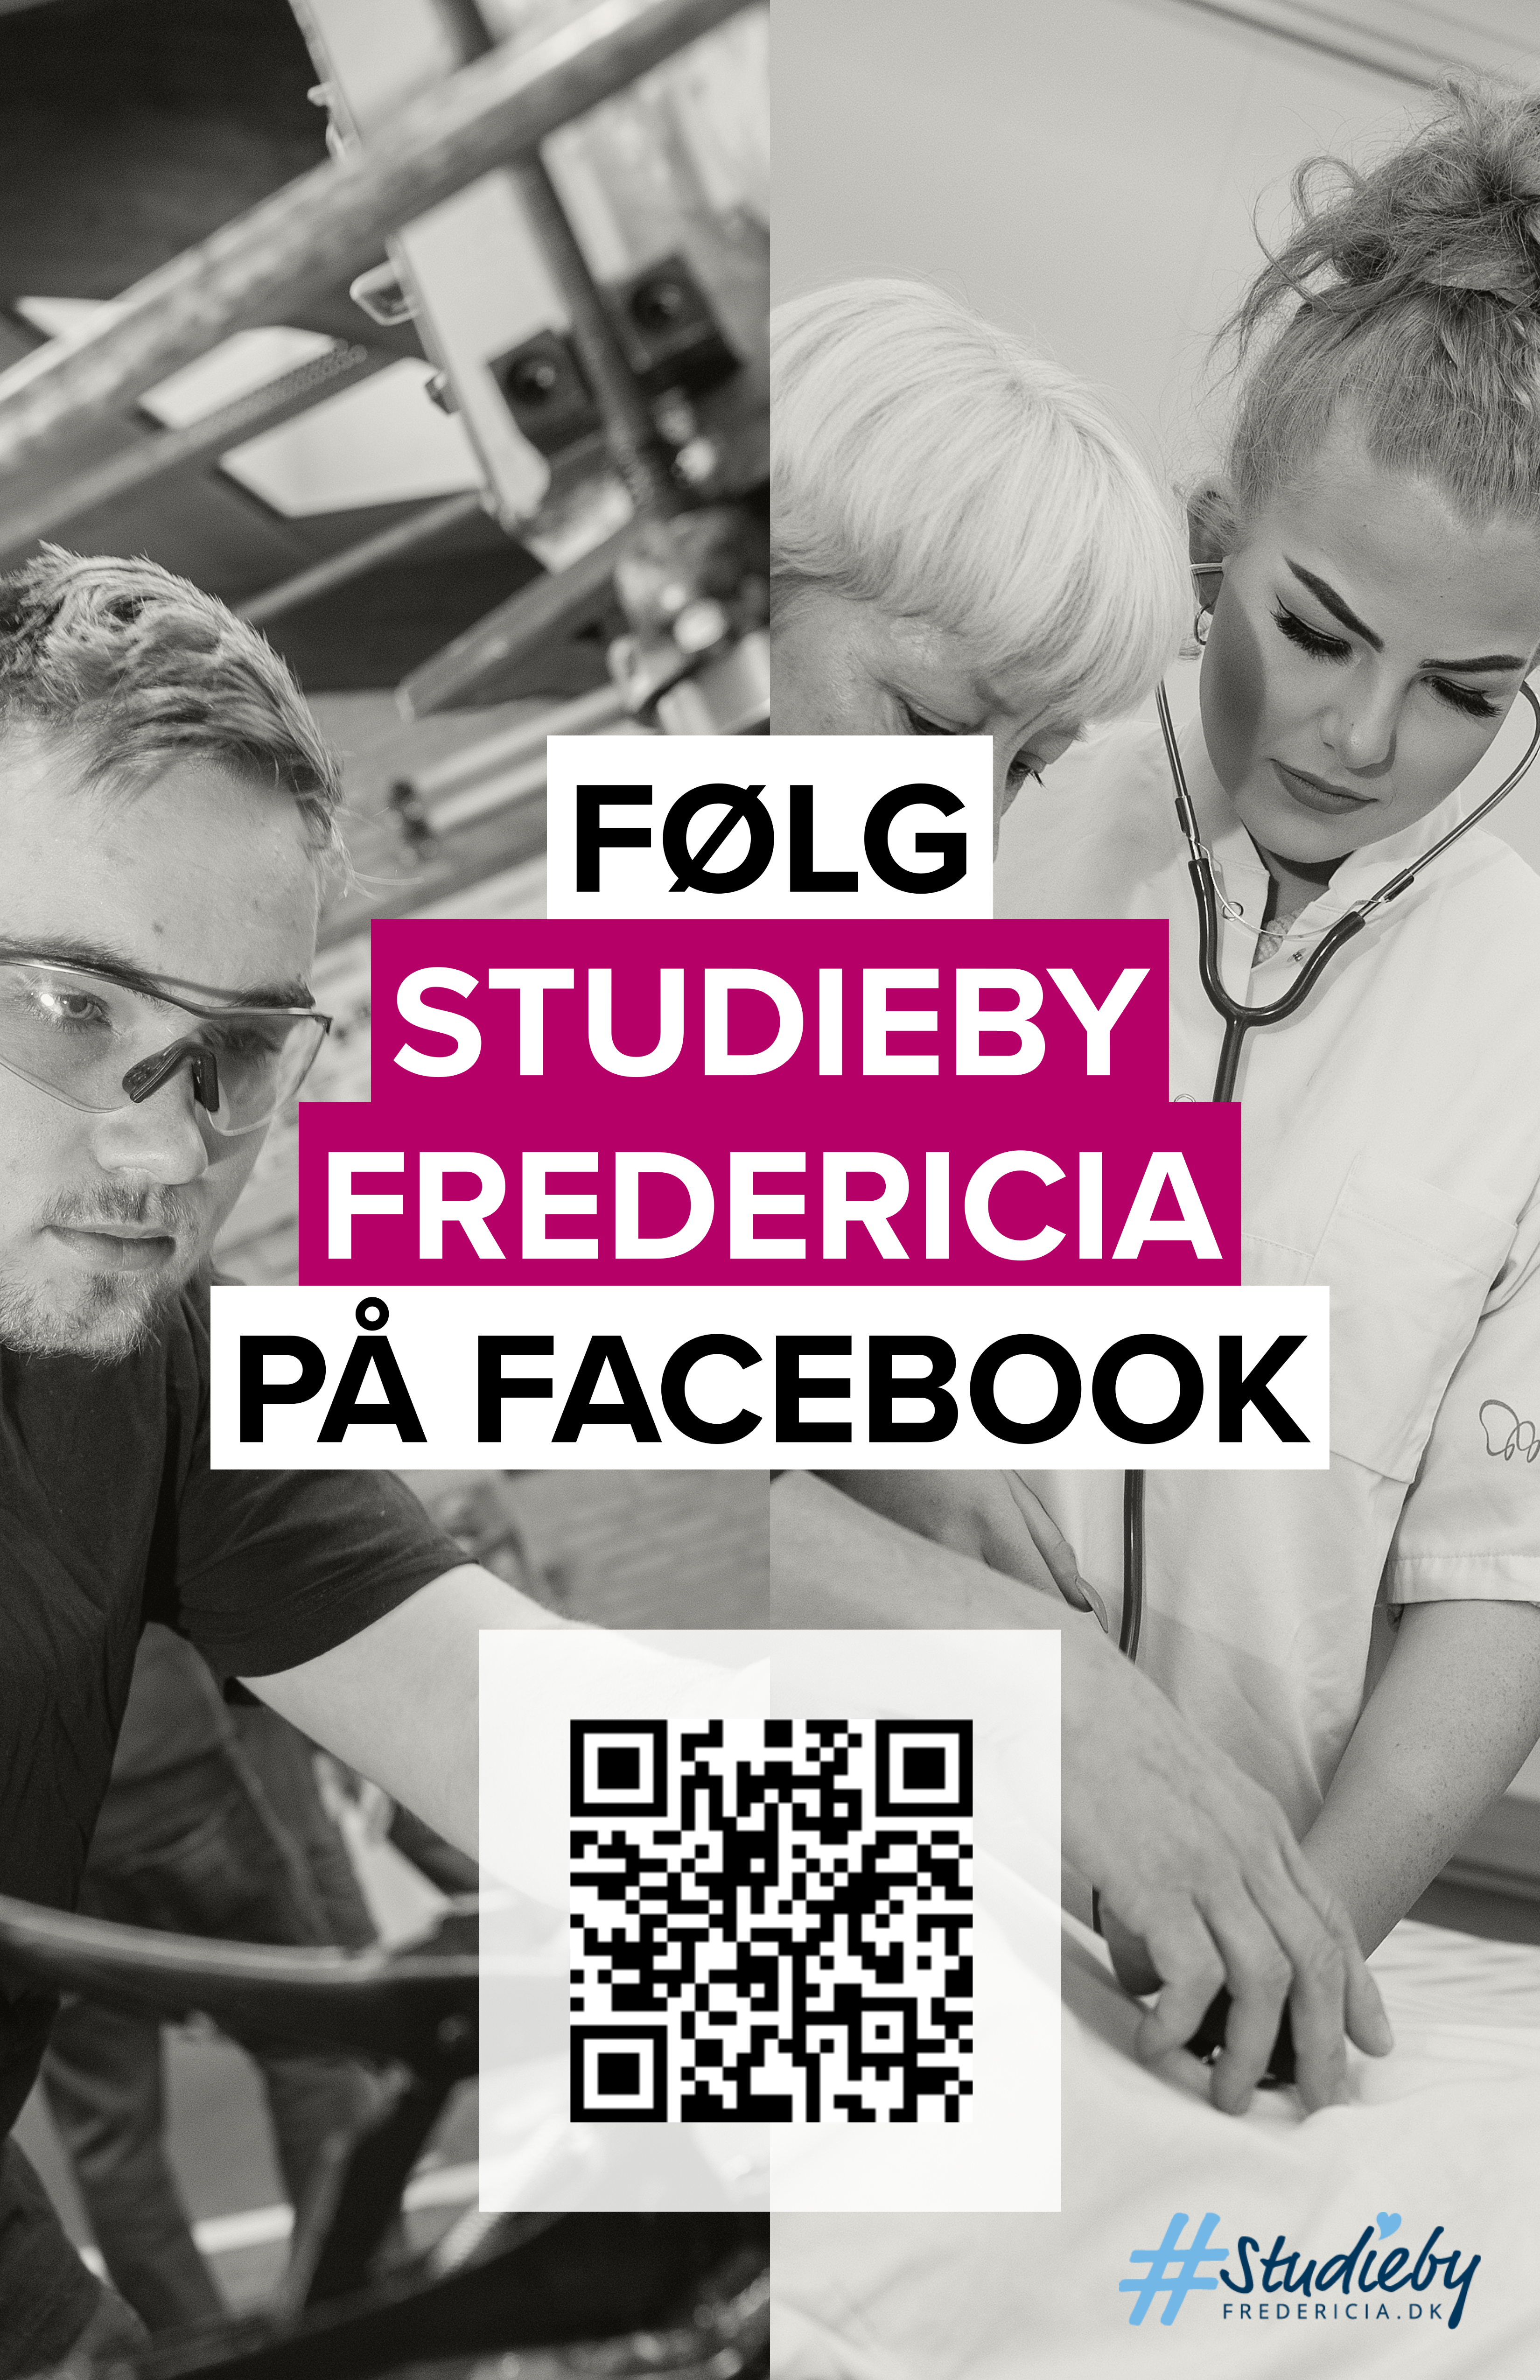 FØLG STUDIEBY FREDERICIA PÅ FACEBOOK